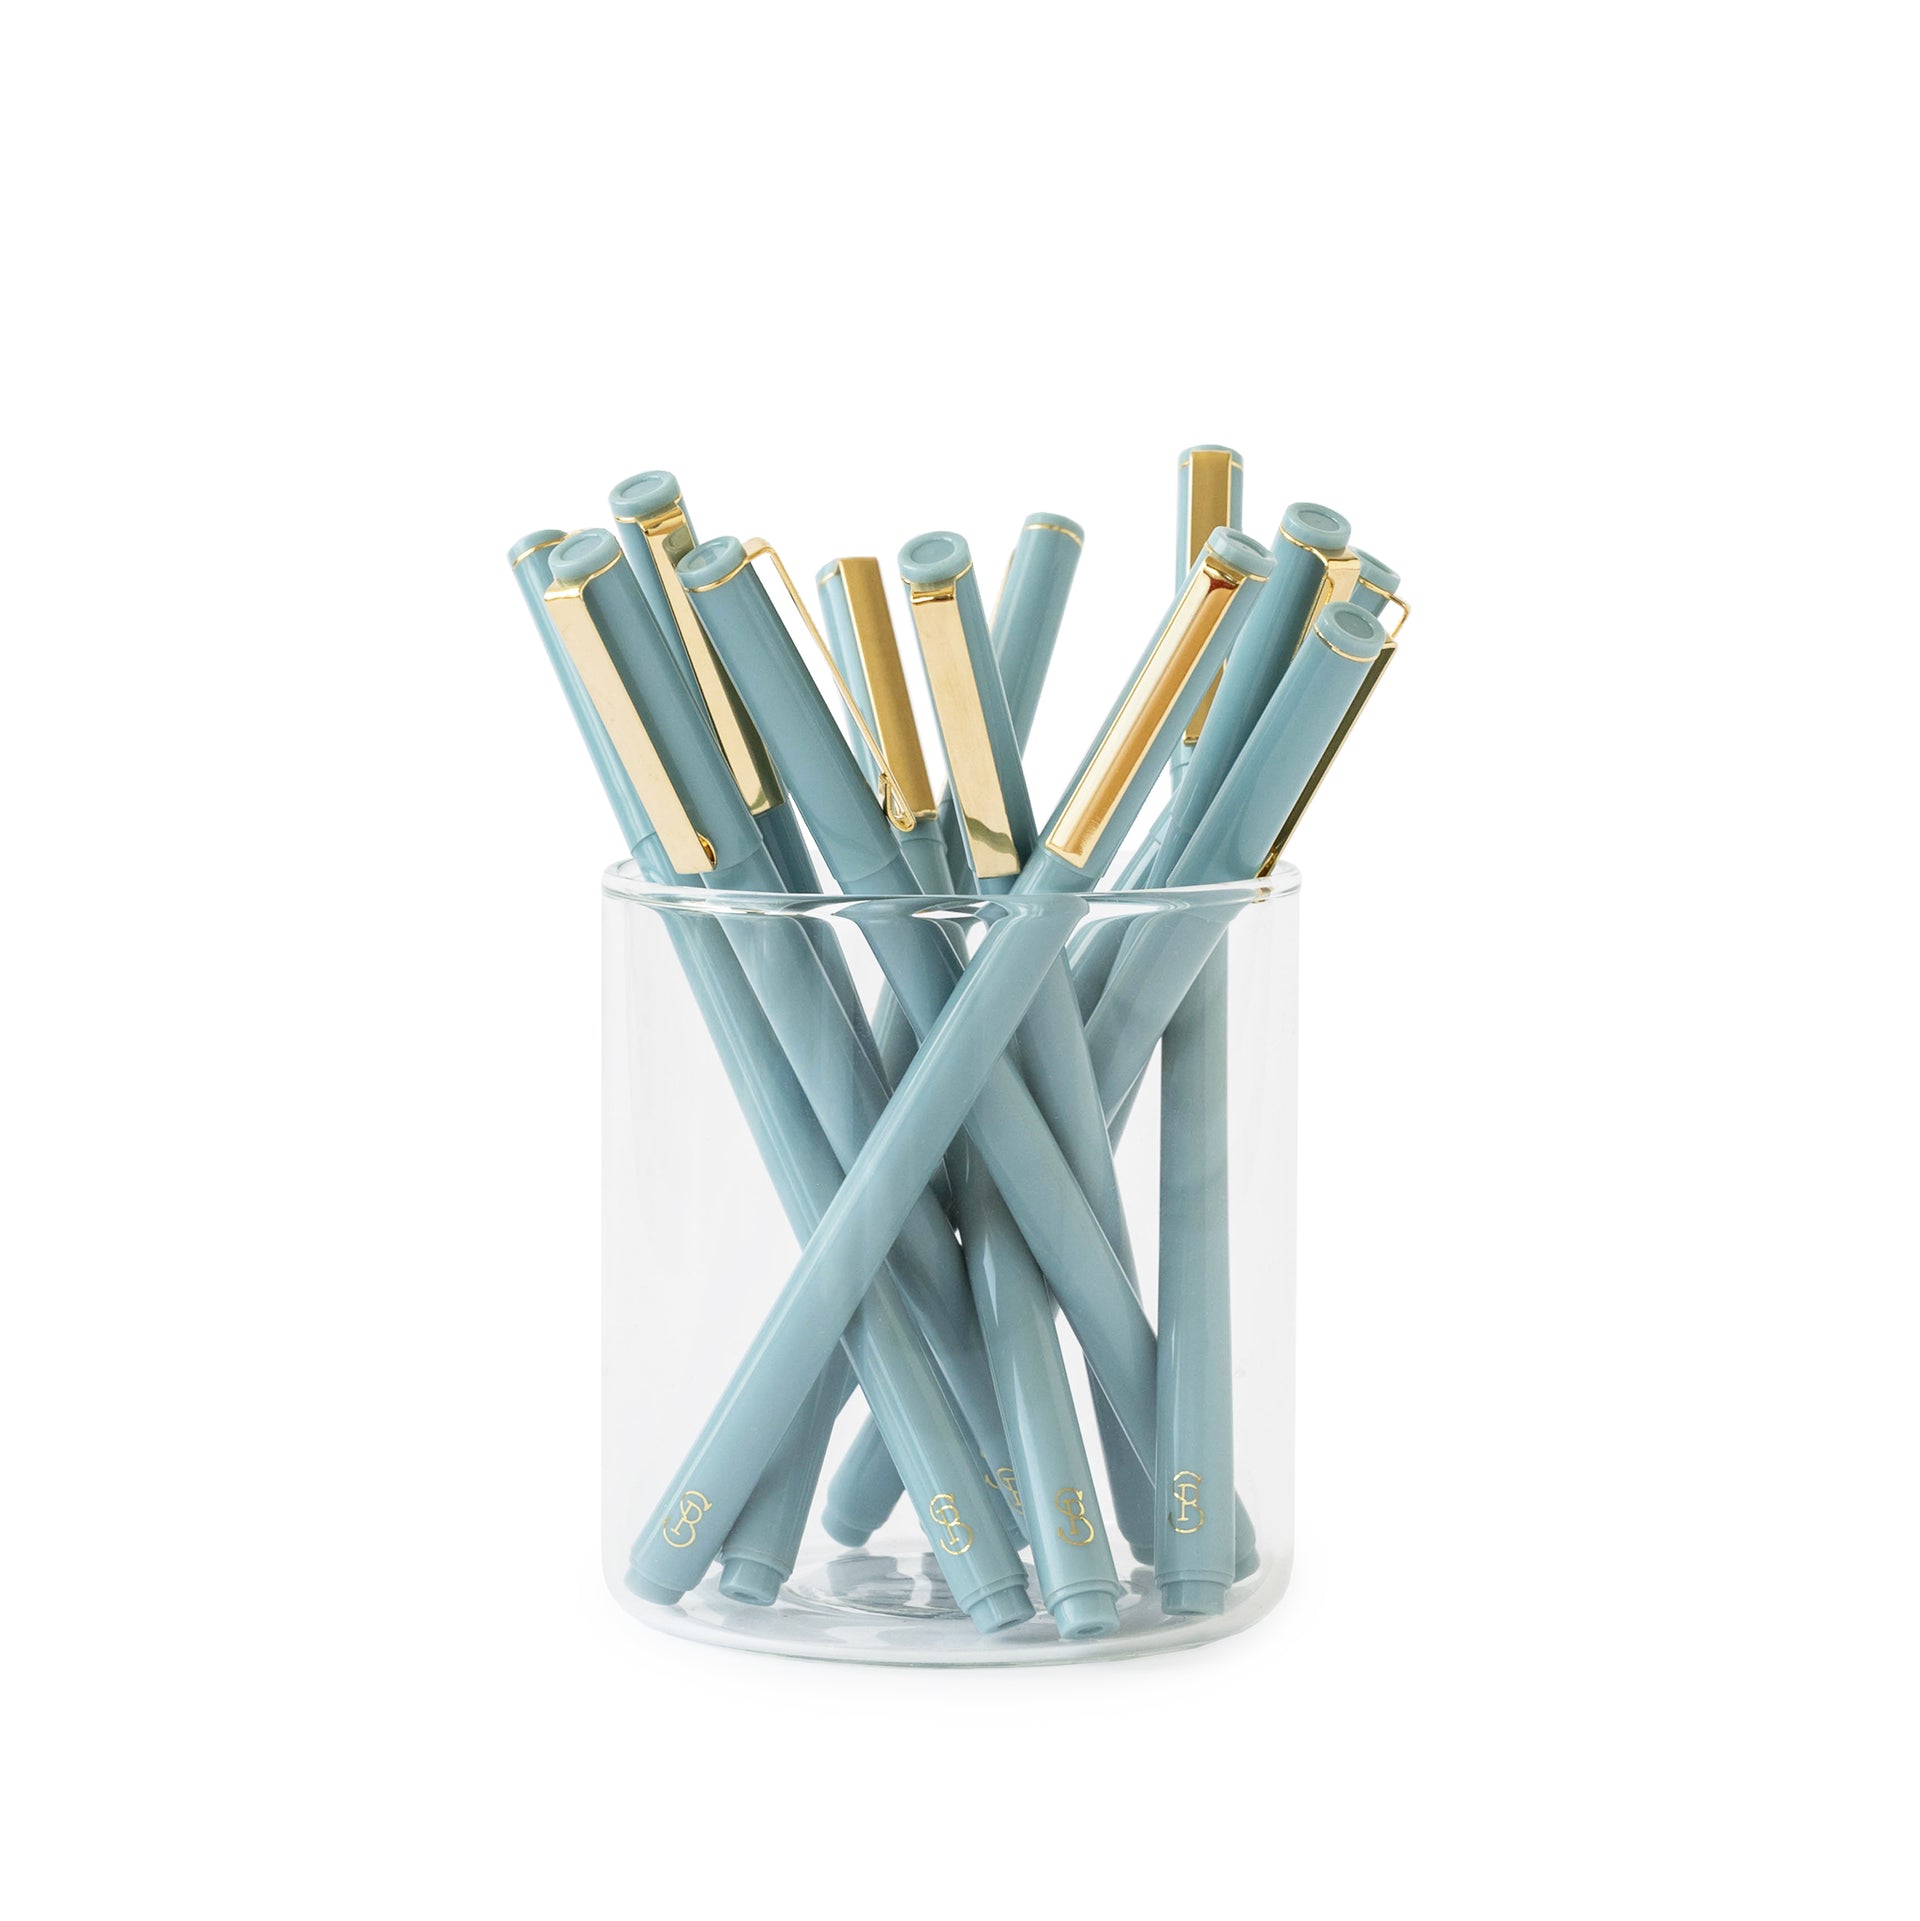 The Blue Felt Pen Set – Sugar Paper